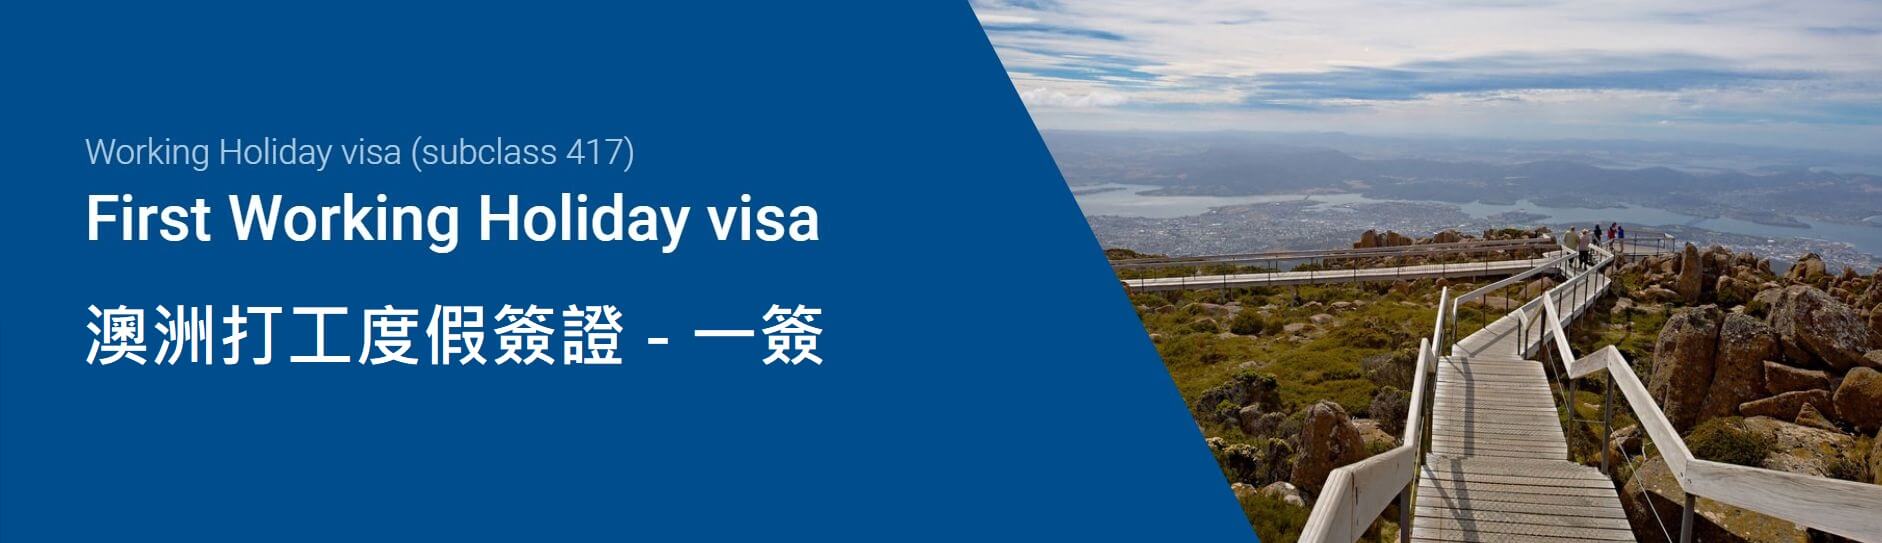 澳洲打工度假簽證申請流程